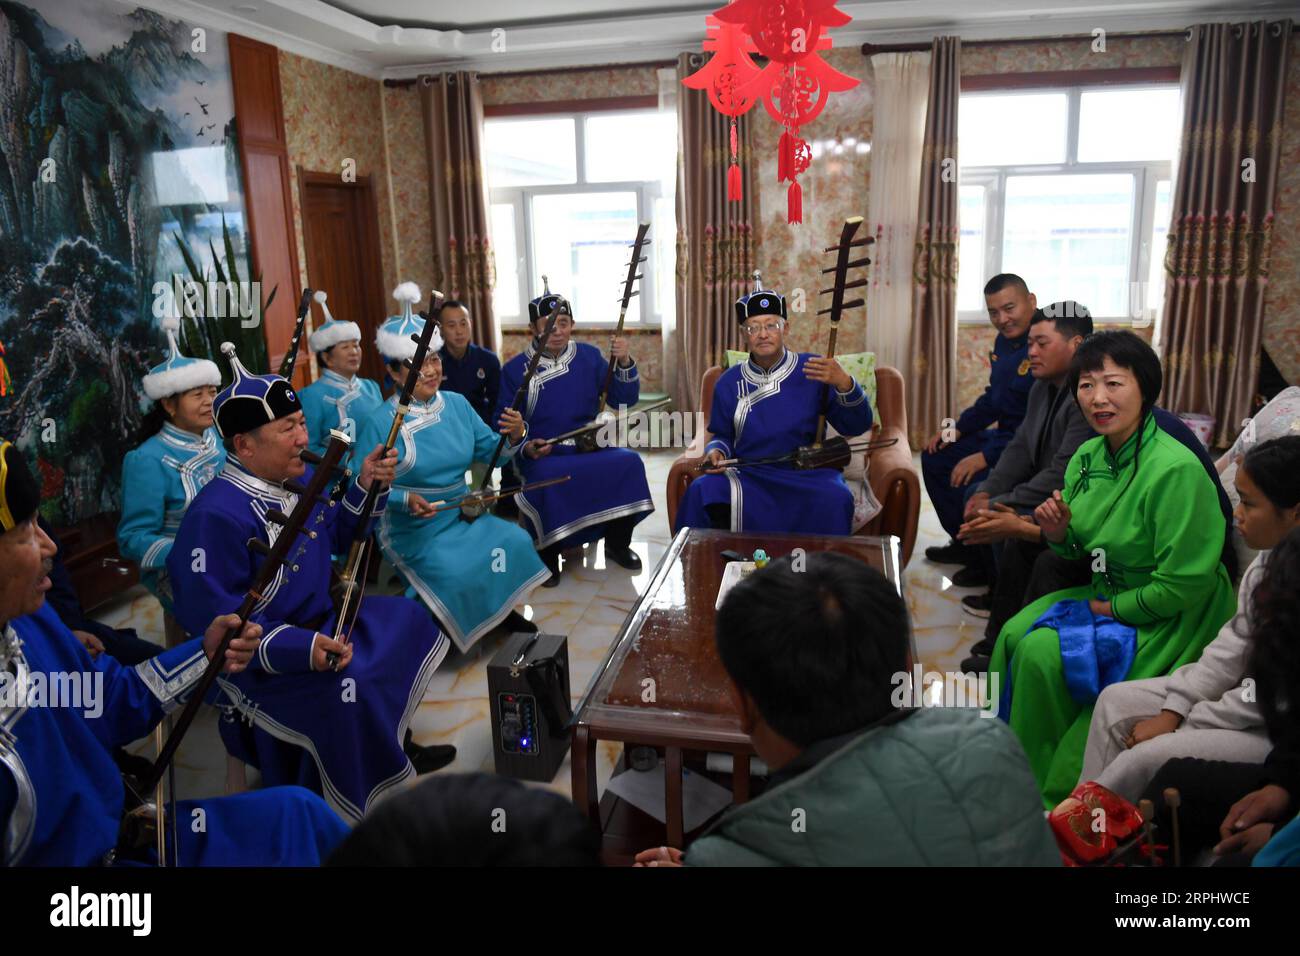 191118 -- HOHHOT, 18. November 2019 -- Mitglieder eines musikalischen Teams treten für lokale Hirten in Horqin Youyi Zhongqi, Nordchinas Innere Mongolei Autonome Region, 17. November 2019 auf. Um das Bewusstsein der Menschen für den Brandschutz zu fördern, bildeten einige Senioren freiwillig ein musikalisches Team und führten Haolaibao auf, eine Art mongolische Volkskunst, die in mongolischen Sprachen mit instrumentaler Begleitung gesungen wurde und mit dem Thema Brandschutz in Zusammenhang steht. Seit fast zehn Jahren hat das Team über 100 Haolaibao-Lieder mit der örtlichen Feuerwehr kreiert und etwa 1.000 Auftritte mongolischen Hirten und Far präsentiert Stockfoto